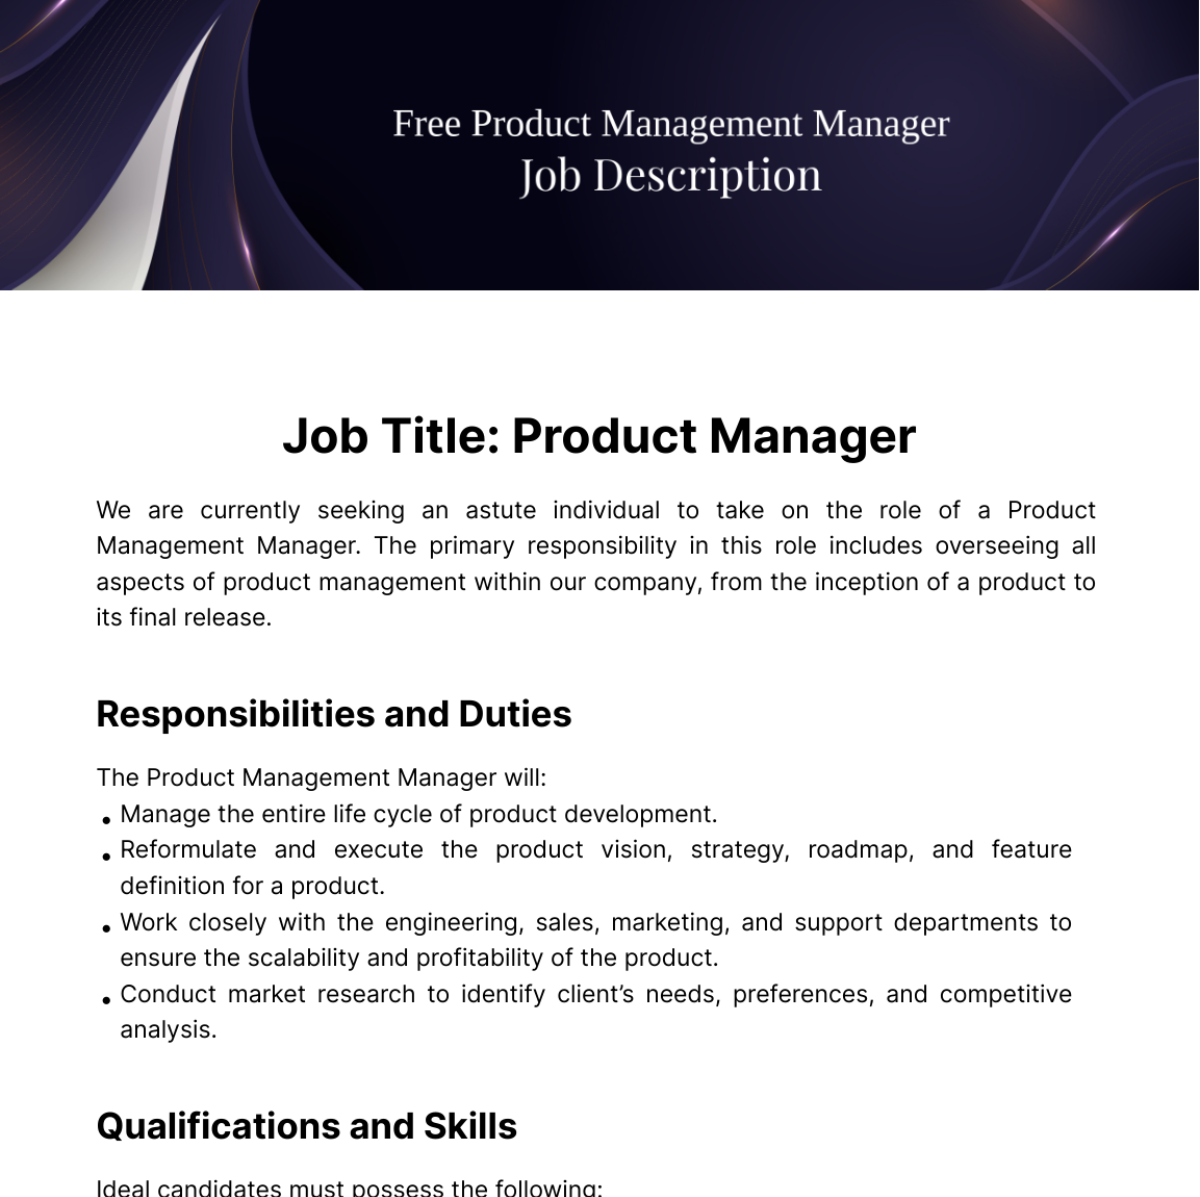 Product Management Manager Job Description Template